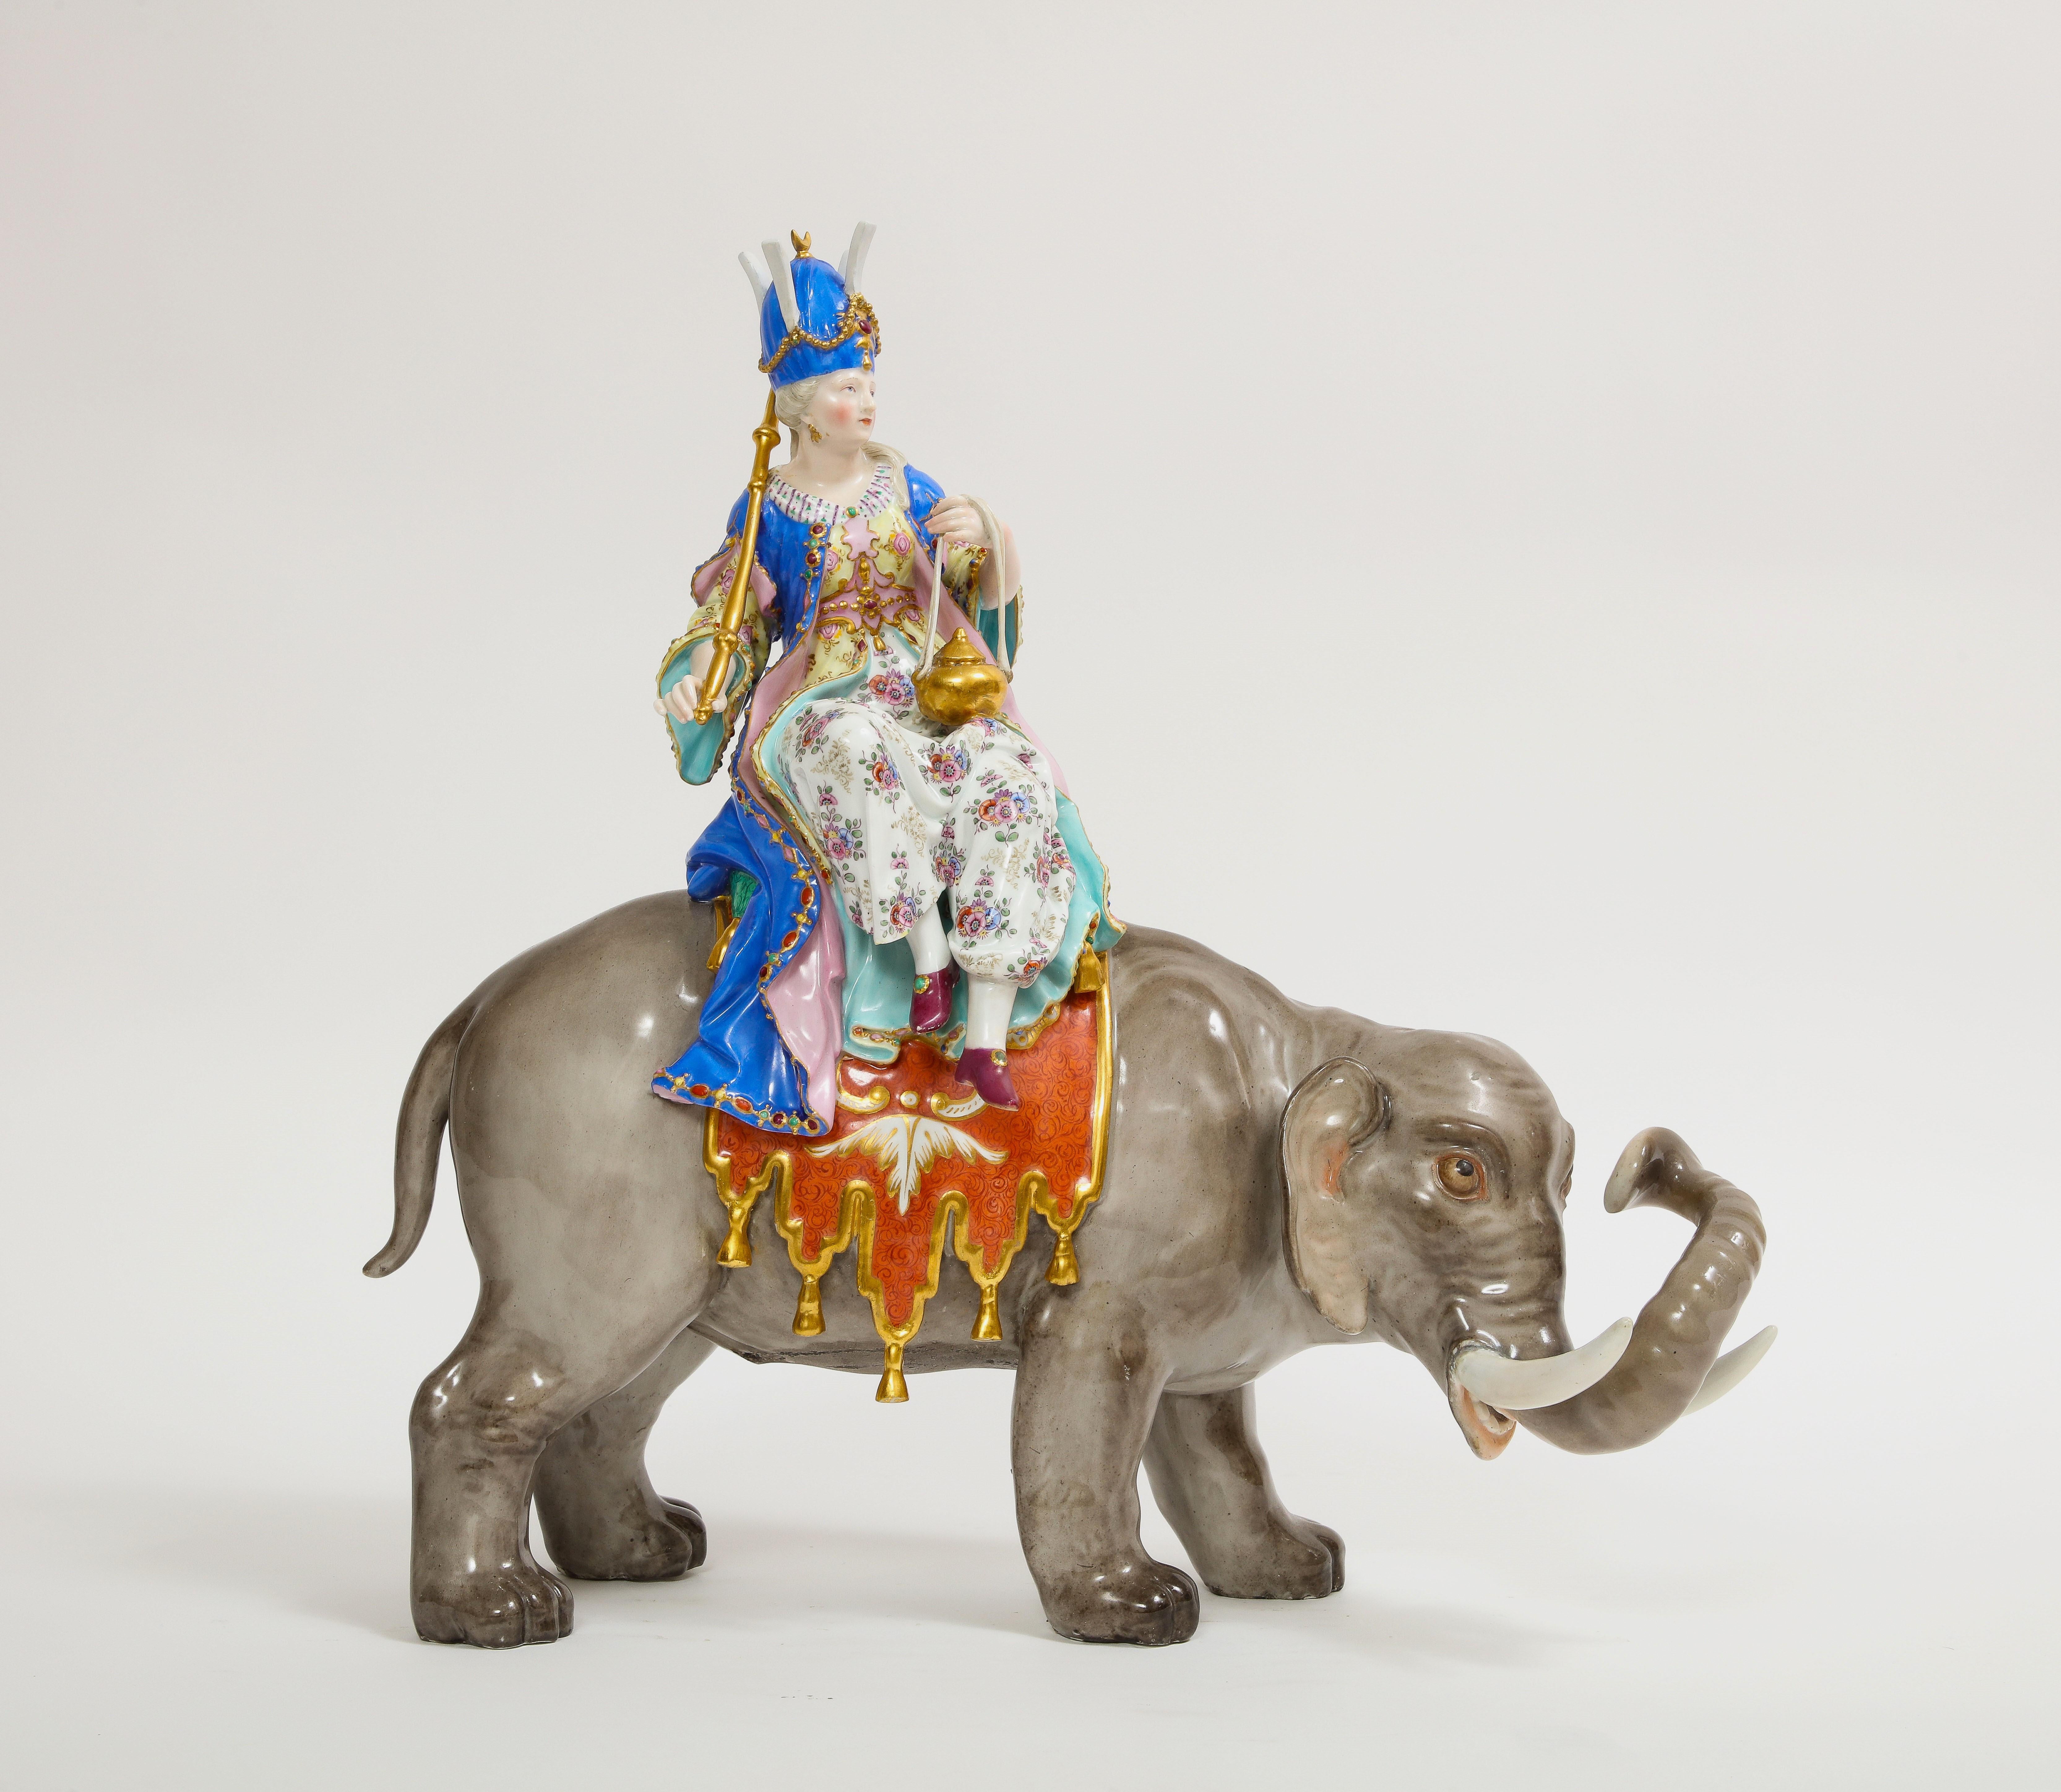 Aufwendige Meissener Porzellanfigur einer auf einem Elefanten reitenden Sultanin aus dem 19. Nach dem Modell von P.J. Reinicke und J.J. Kändler, die Sultana sitzt auf dem Rücken des Elefanten, hält einen Reichsapfel und ein Zepter und trägt einen